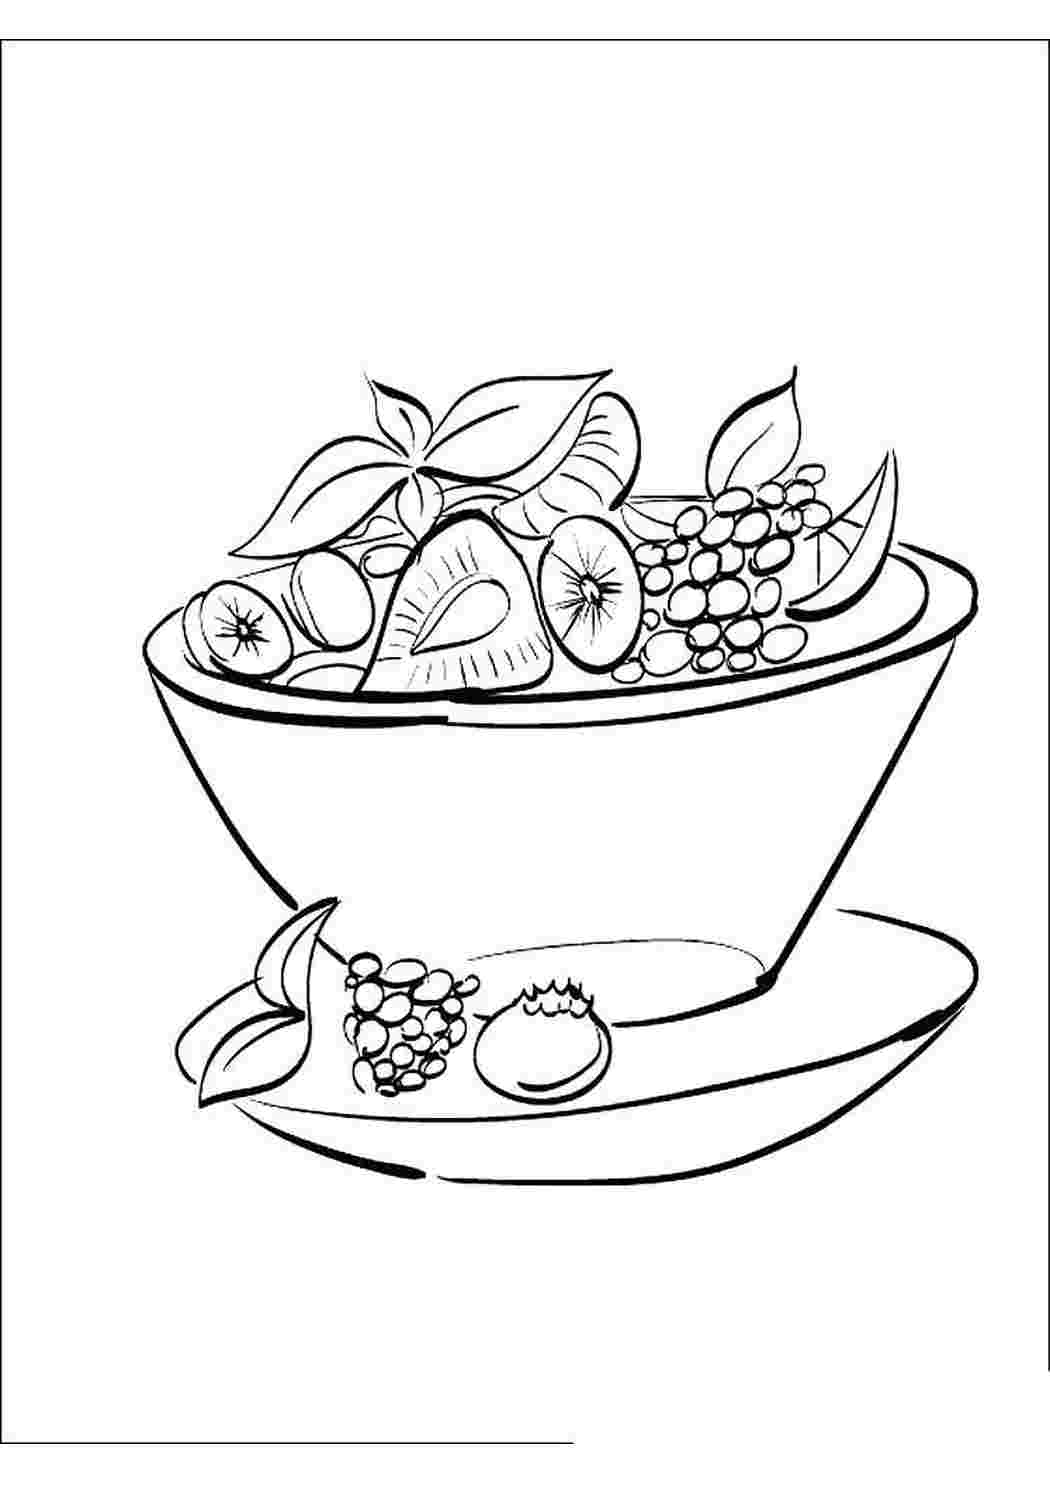 Книжка раскраска фруктовый салат Изображения – скачать бесплатно на Freepik